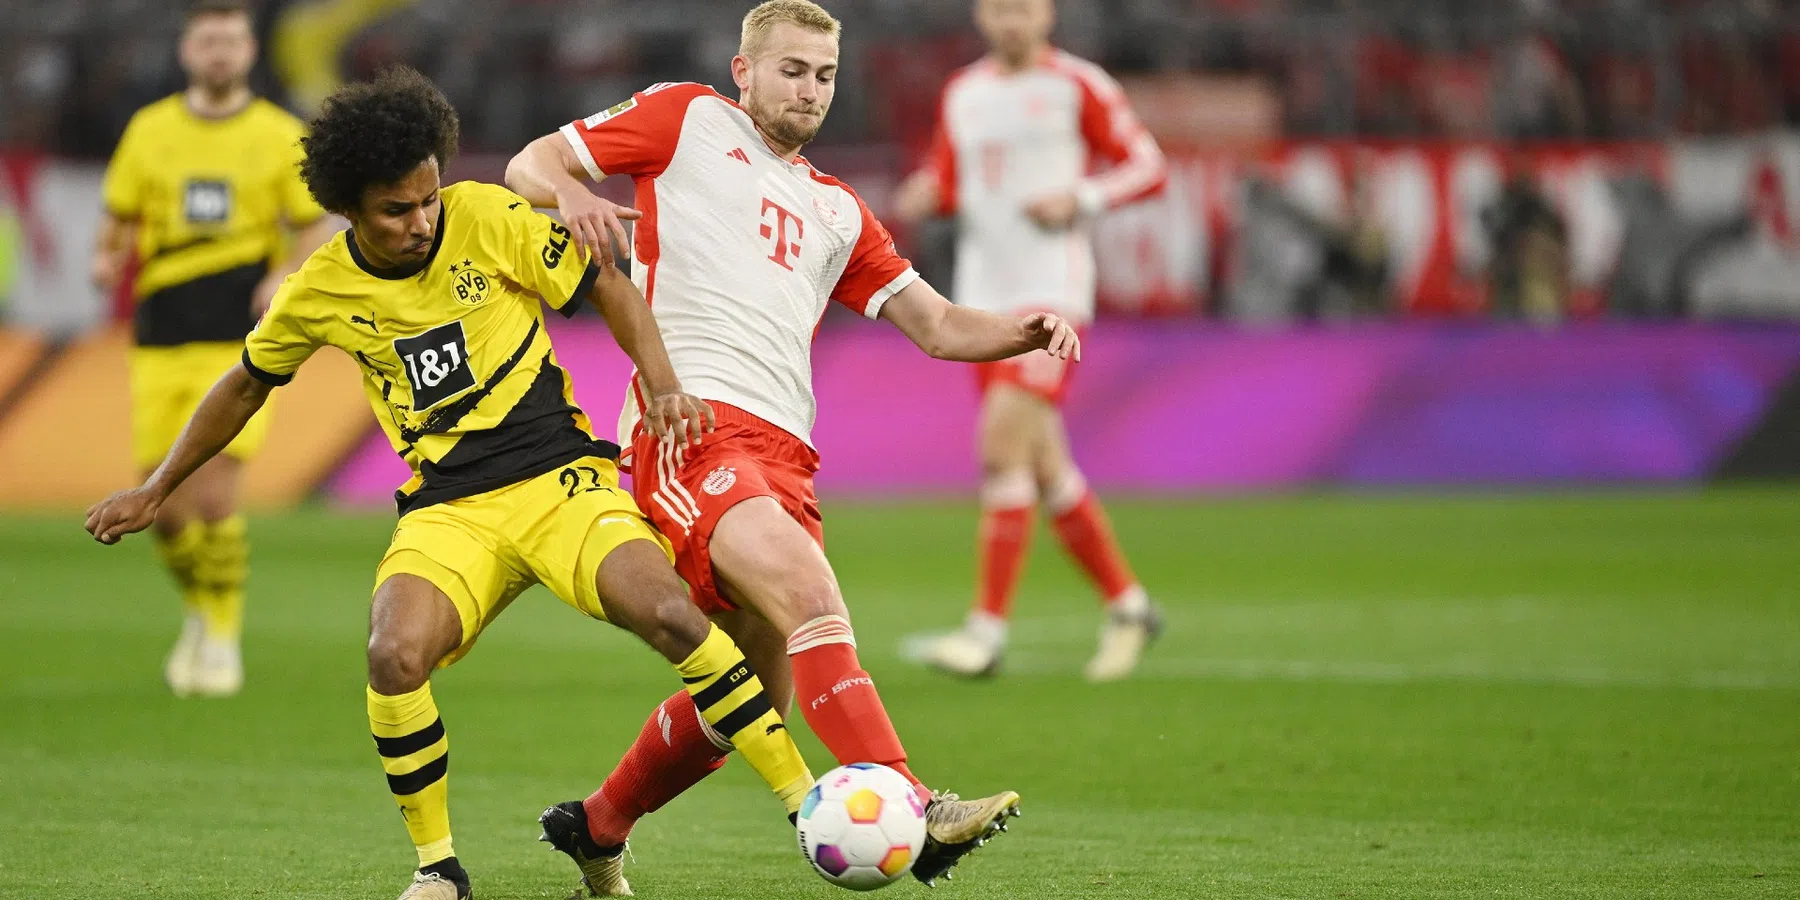 Duitse pers laten zich uit over Matthijs De Ligt tegen Borussia Dortmund